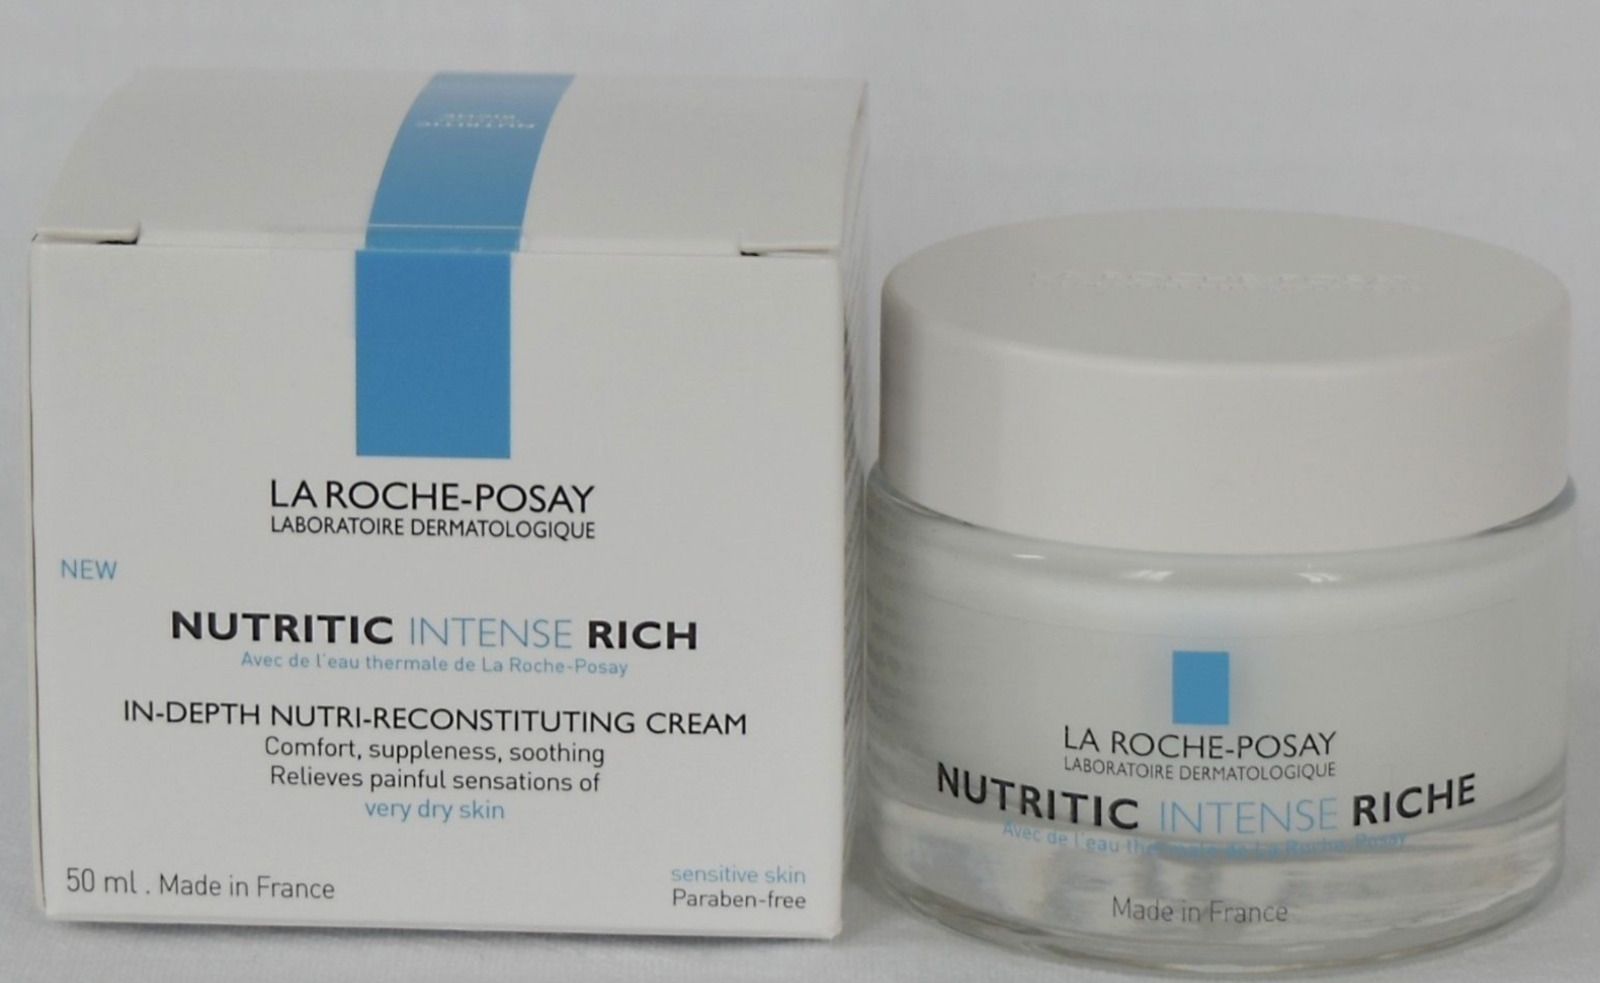 La Roche-Posay Nutritic Intense Rich 50 ml In-Depth Nutri-Recostituting Cream